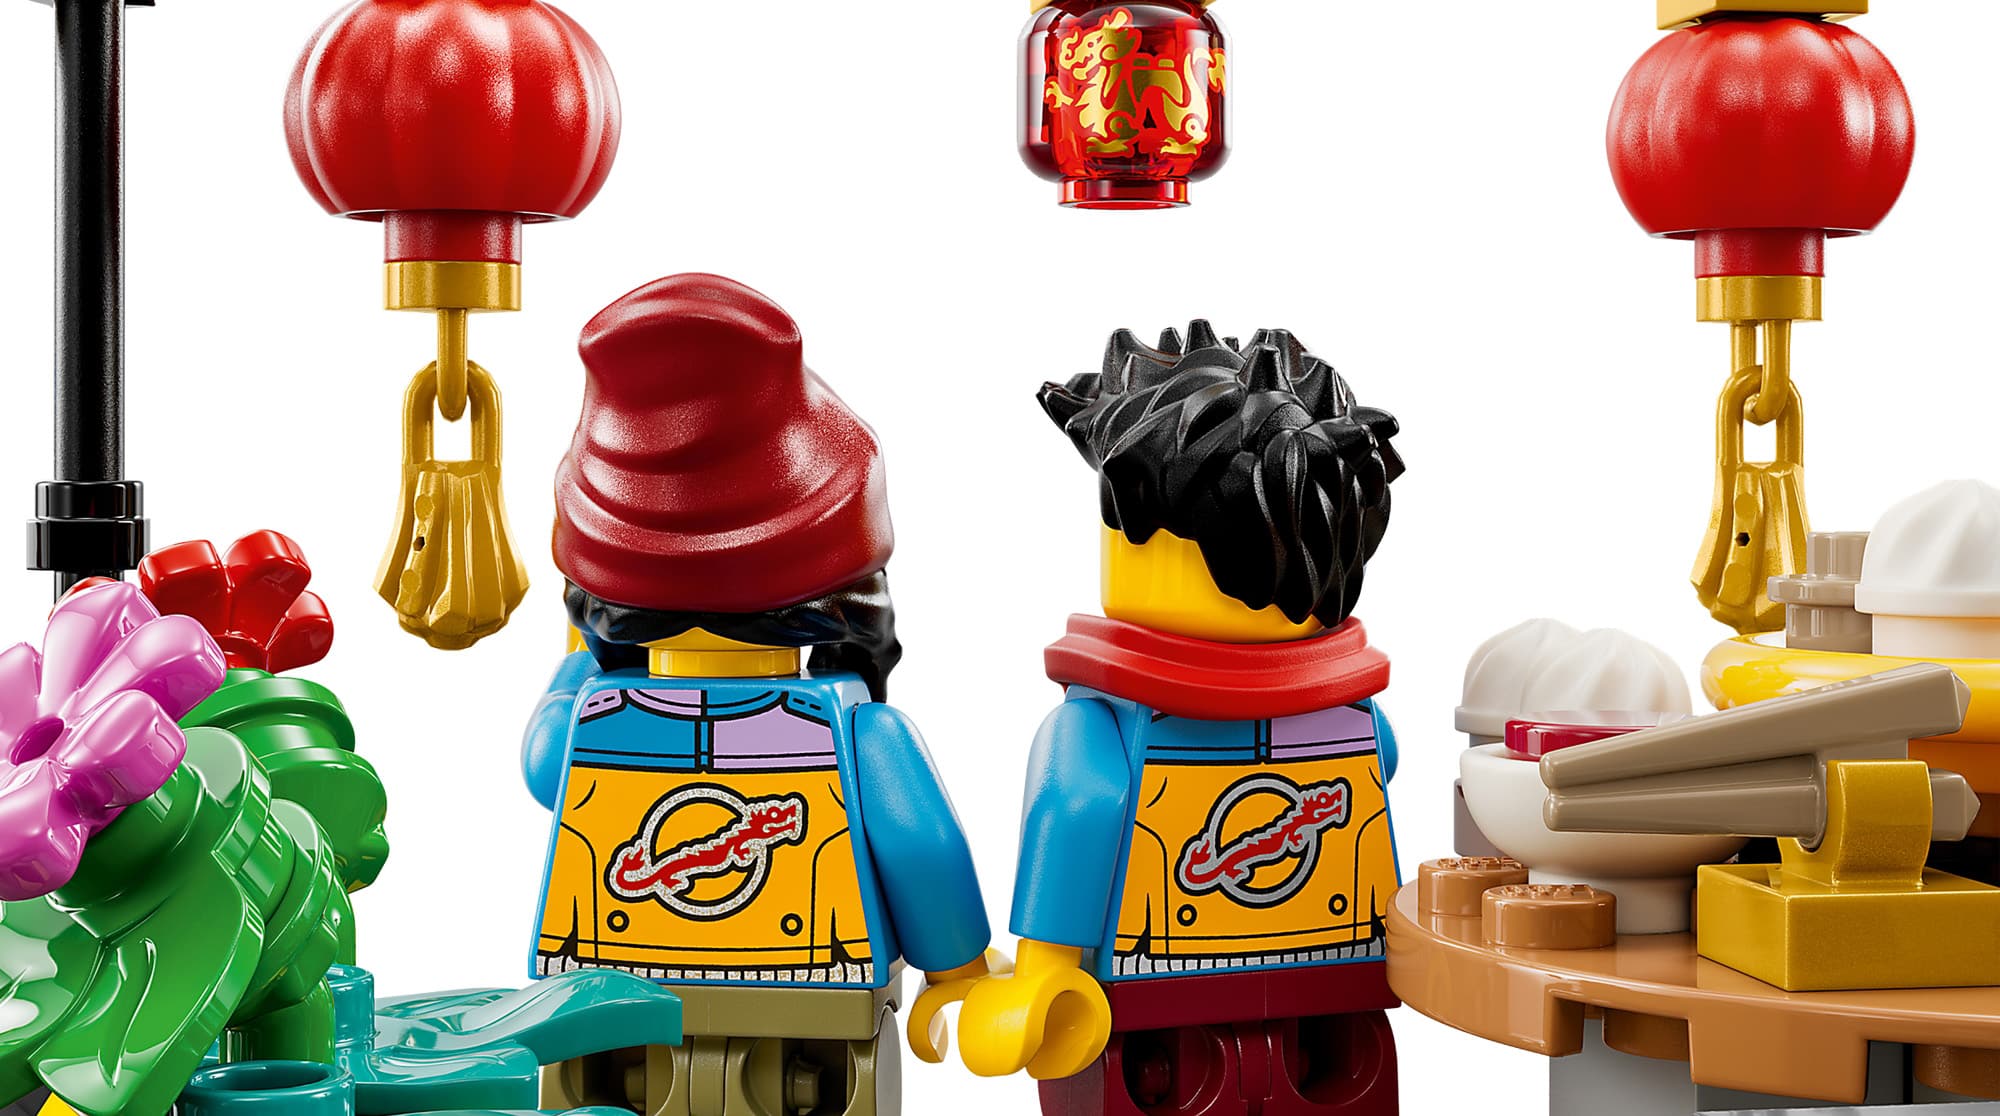 LEGO 80113 Familientreffen Minifiguren 06